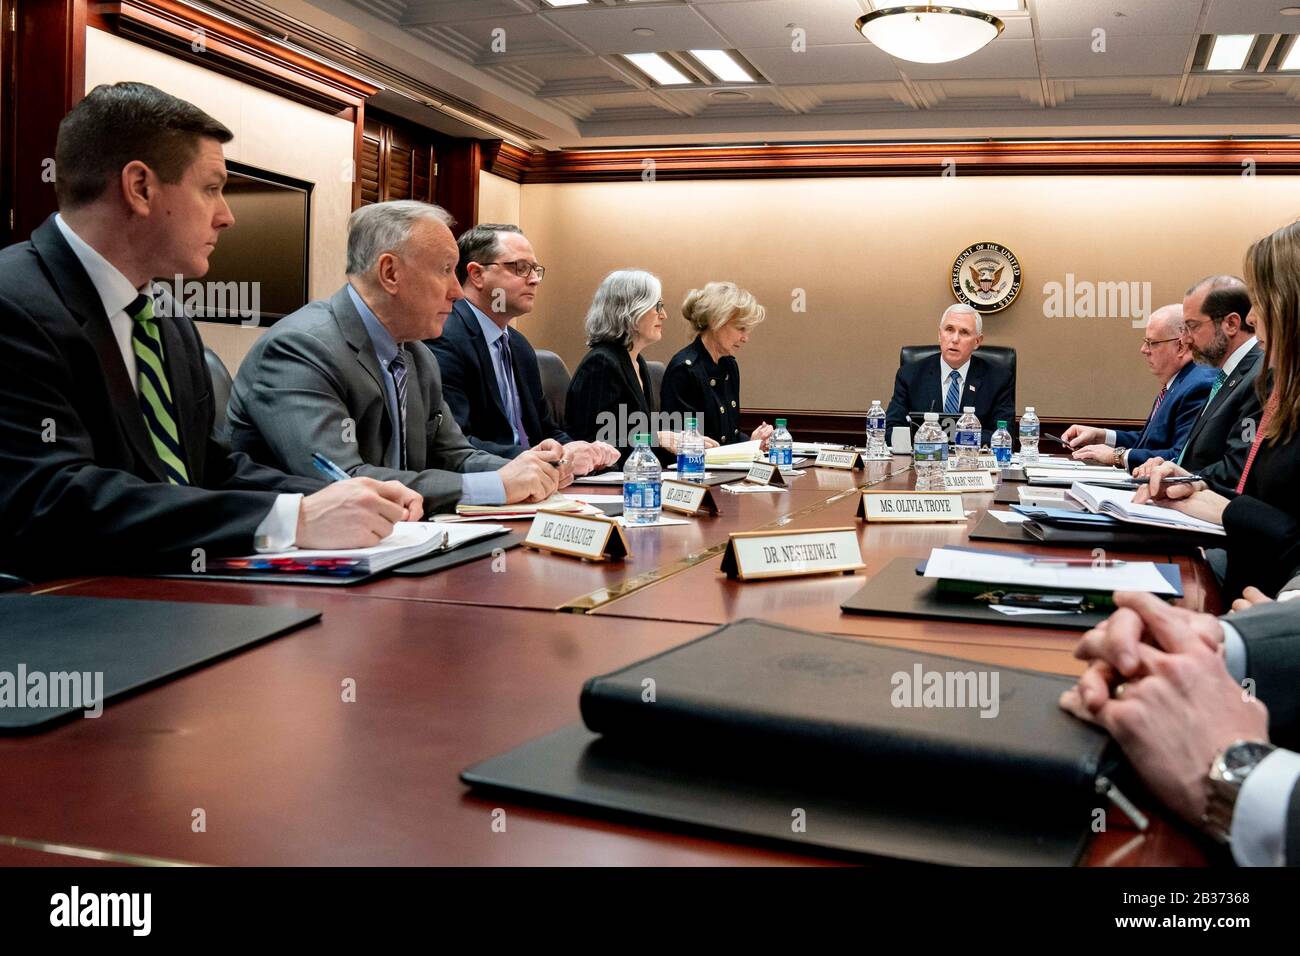 Mike Pence, vicepresidente de EE.UU., preside una teleconferencia de vídeo del Grupo de Trabajo sobre Coronavirus con los gobernadores en la Sala De Situación de la Casa Blanca el 2 de marzo de 2020 en Washington, DC. Foto de stock